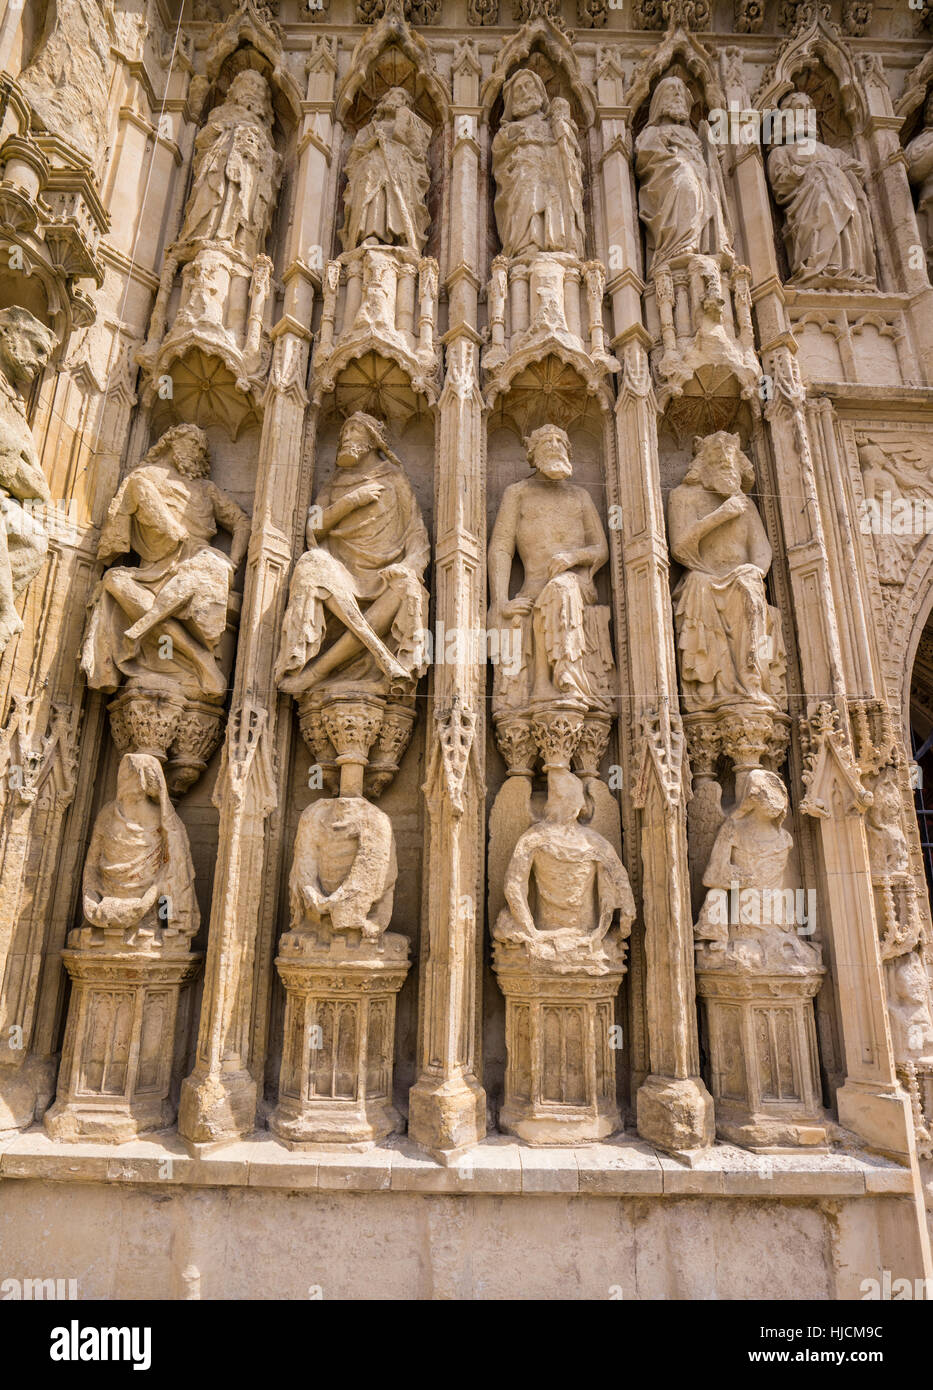 Gran Bretagna, Sud Ovest Inghilterra, Devon, Exeter, Cattedrale di Exeter, elaborare sculture in pietra degli angeli, santi, figure bibliche e kings Foto Stock